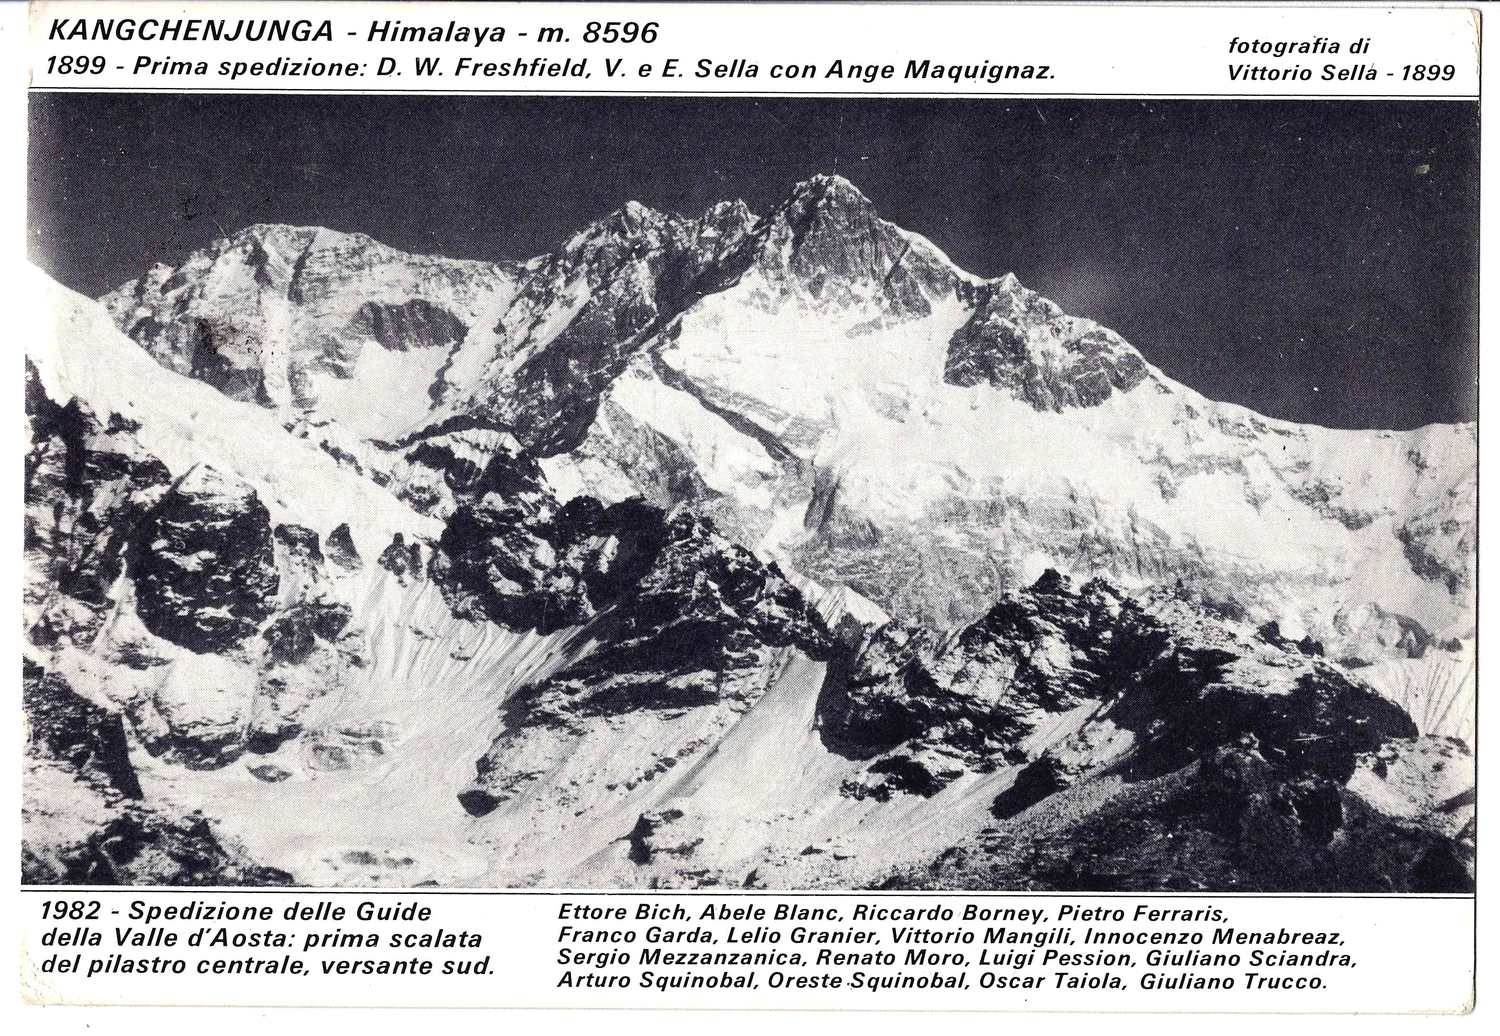 Открытка, посвящённая восхождению итальянской экспедиции на гору Канченджанга. 1982. Автографы альпинистов.